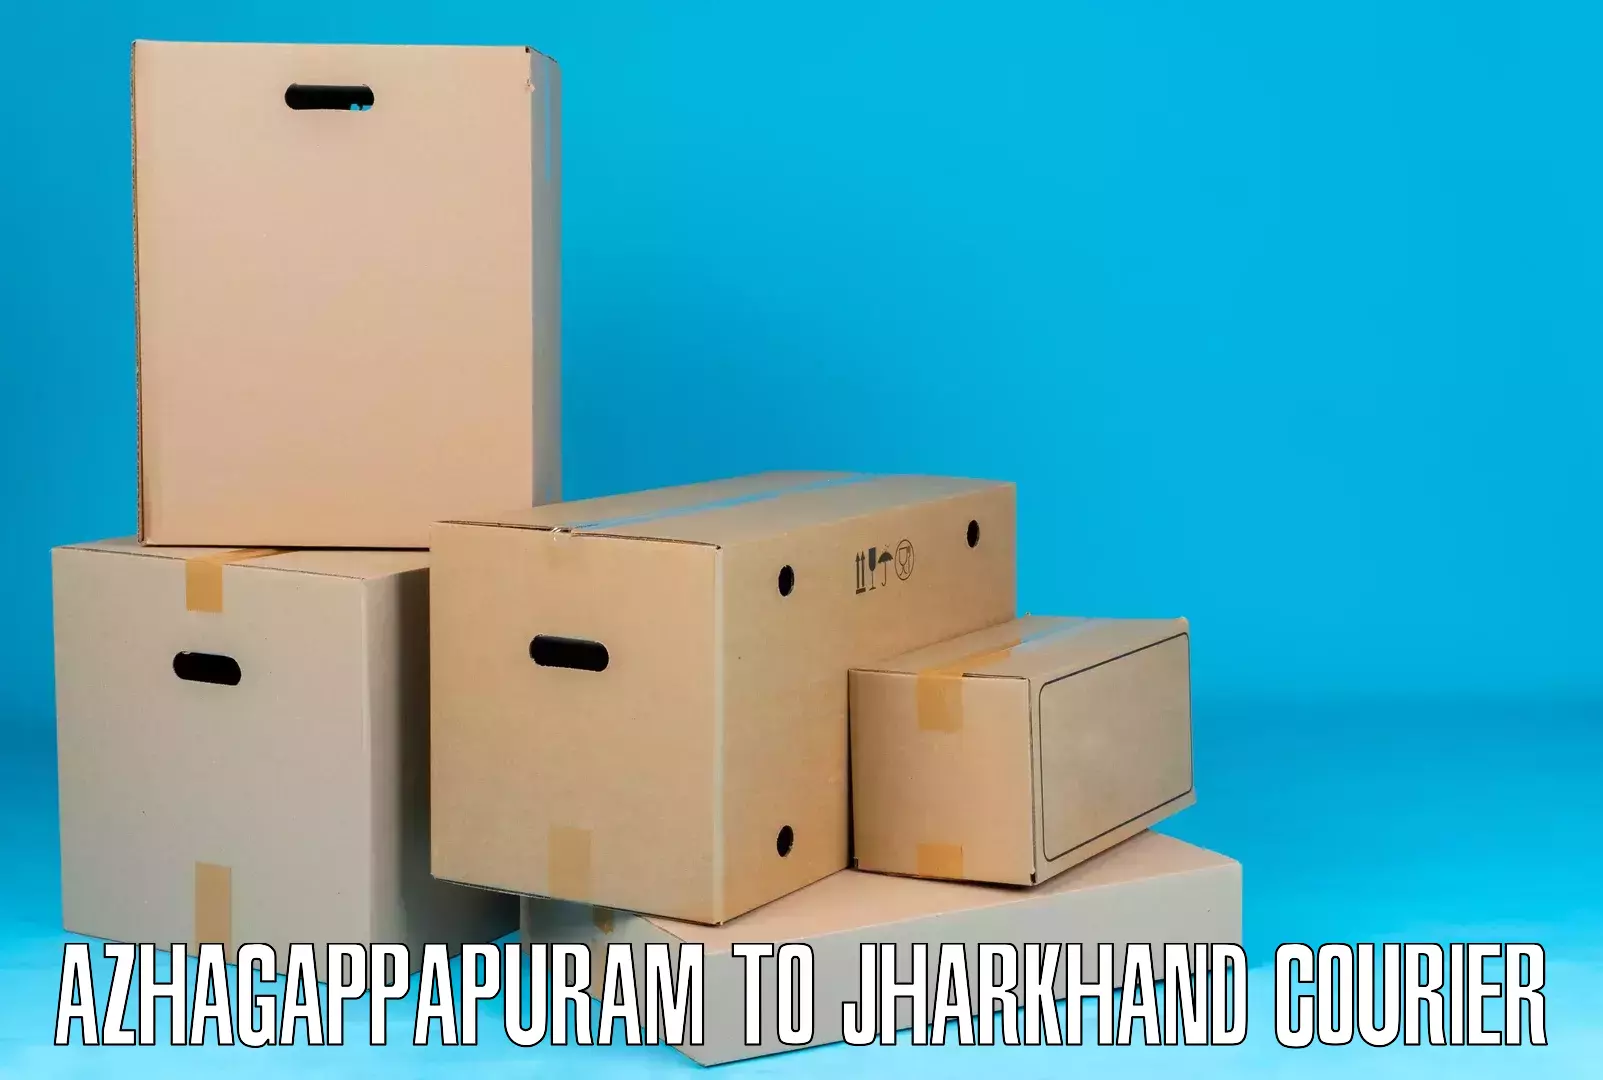 Special handling courier Azhagappapuram to Palojori